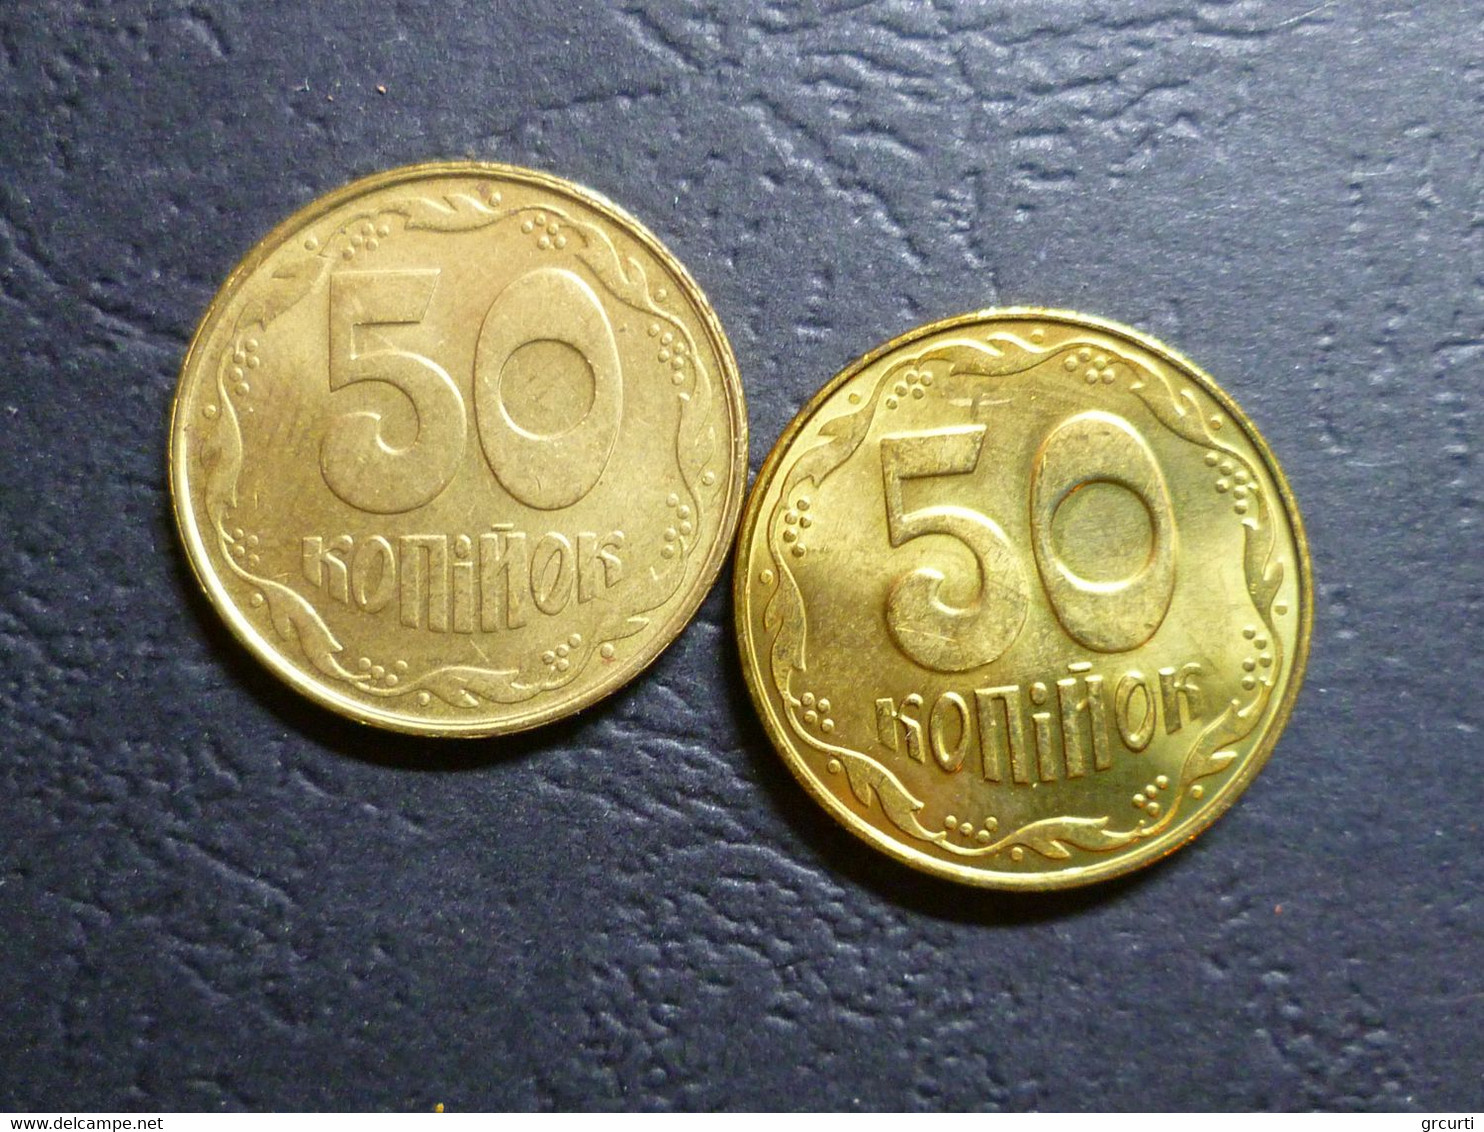 Ucraina - Lotto di 43 monete moderne  - 1992-2014